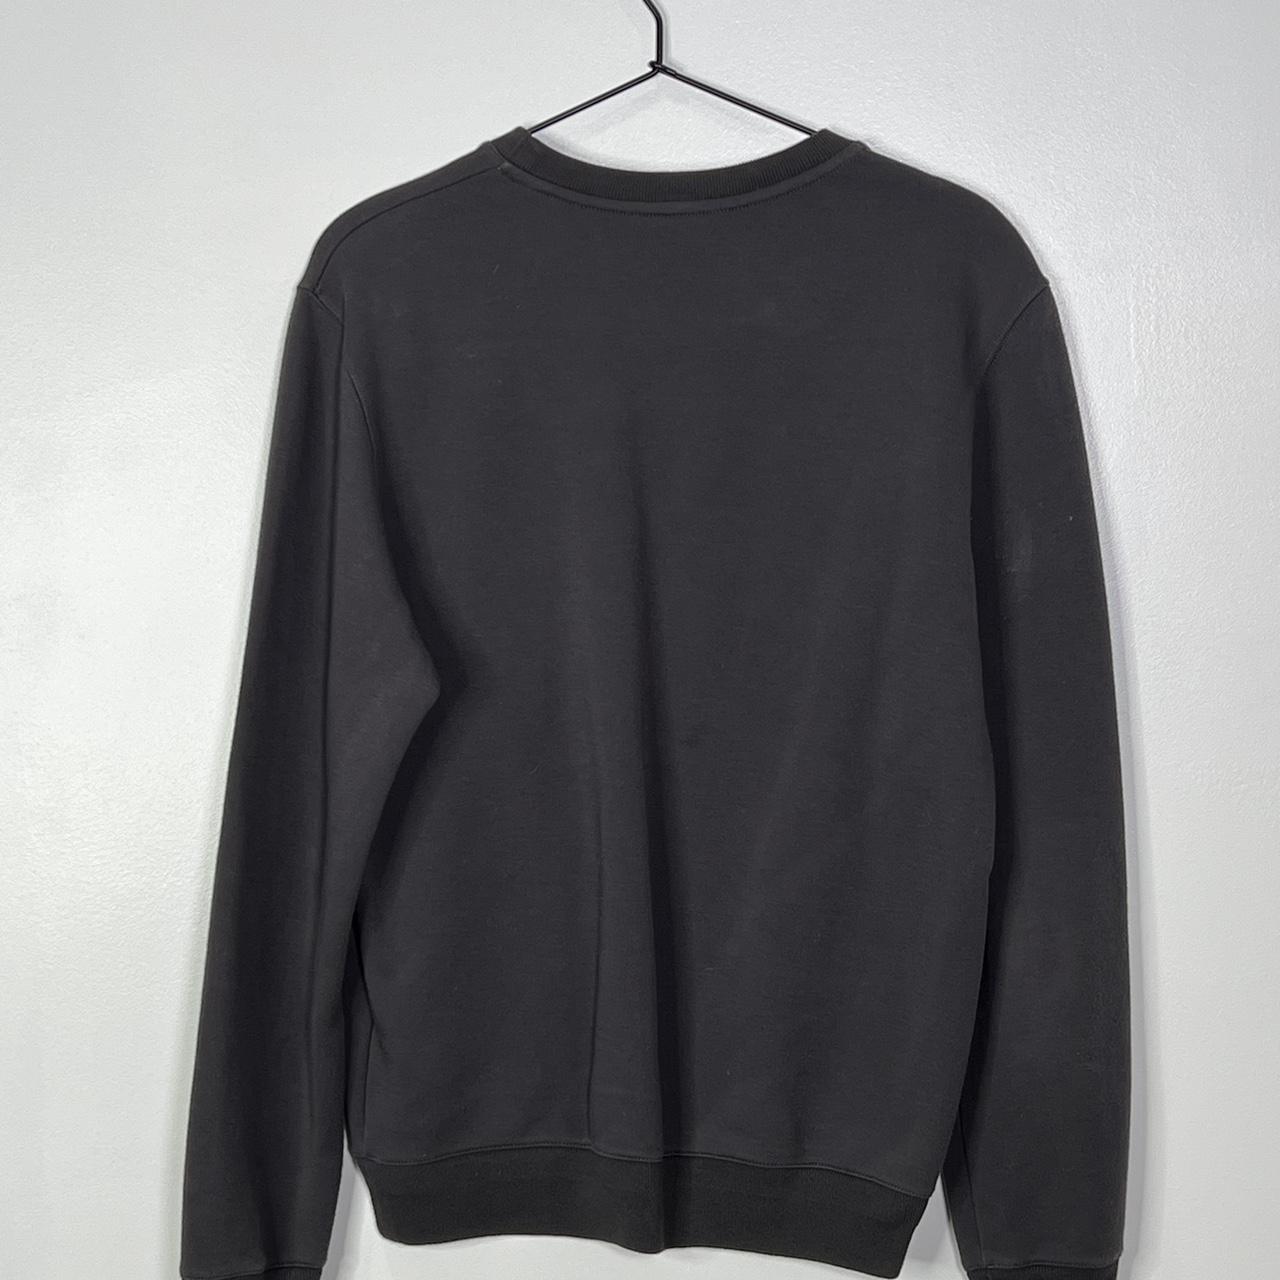 Louis Vuitton Sweater - 100% Authentic - Size:... - Depop